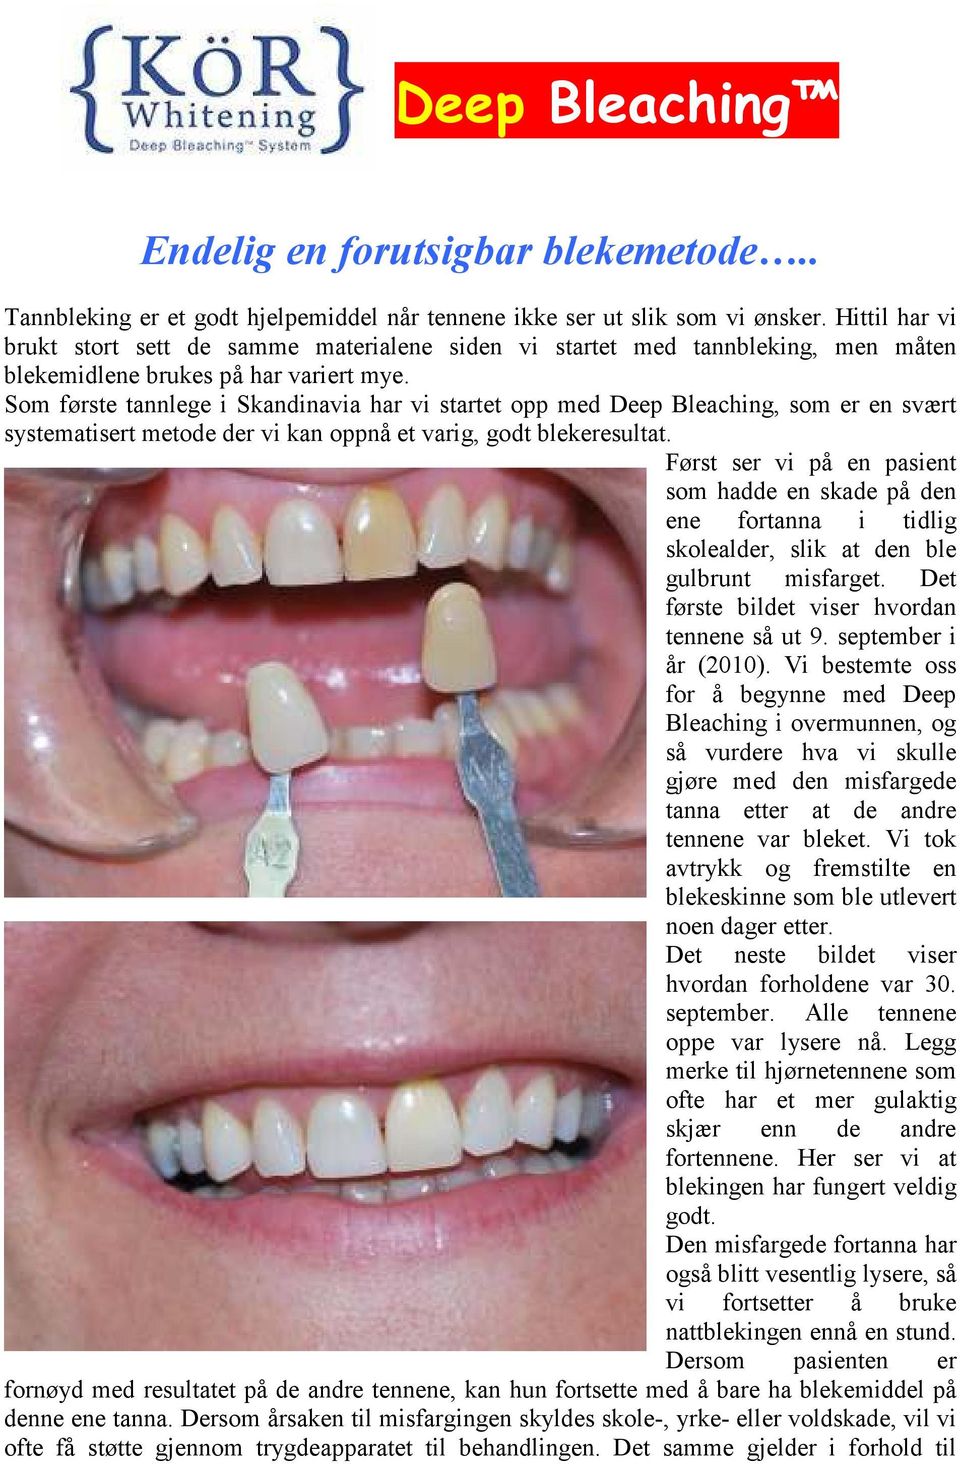 Som første tannlege i Skandinavia har vi startet opp med Deep Bleaching, som er en svært systematisert metode der vi kan oppnå et varig, godt blekeresultat.